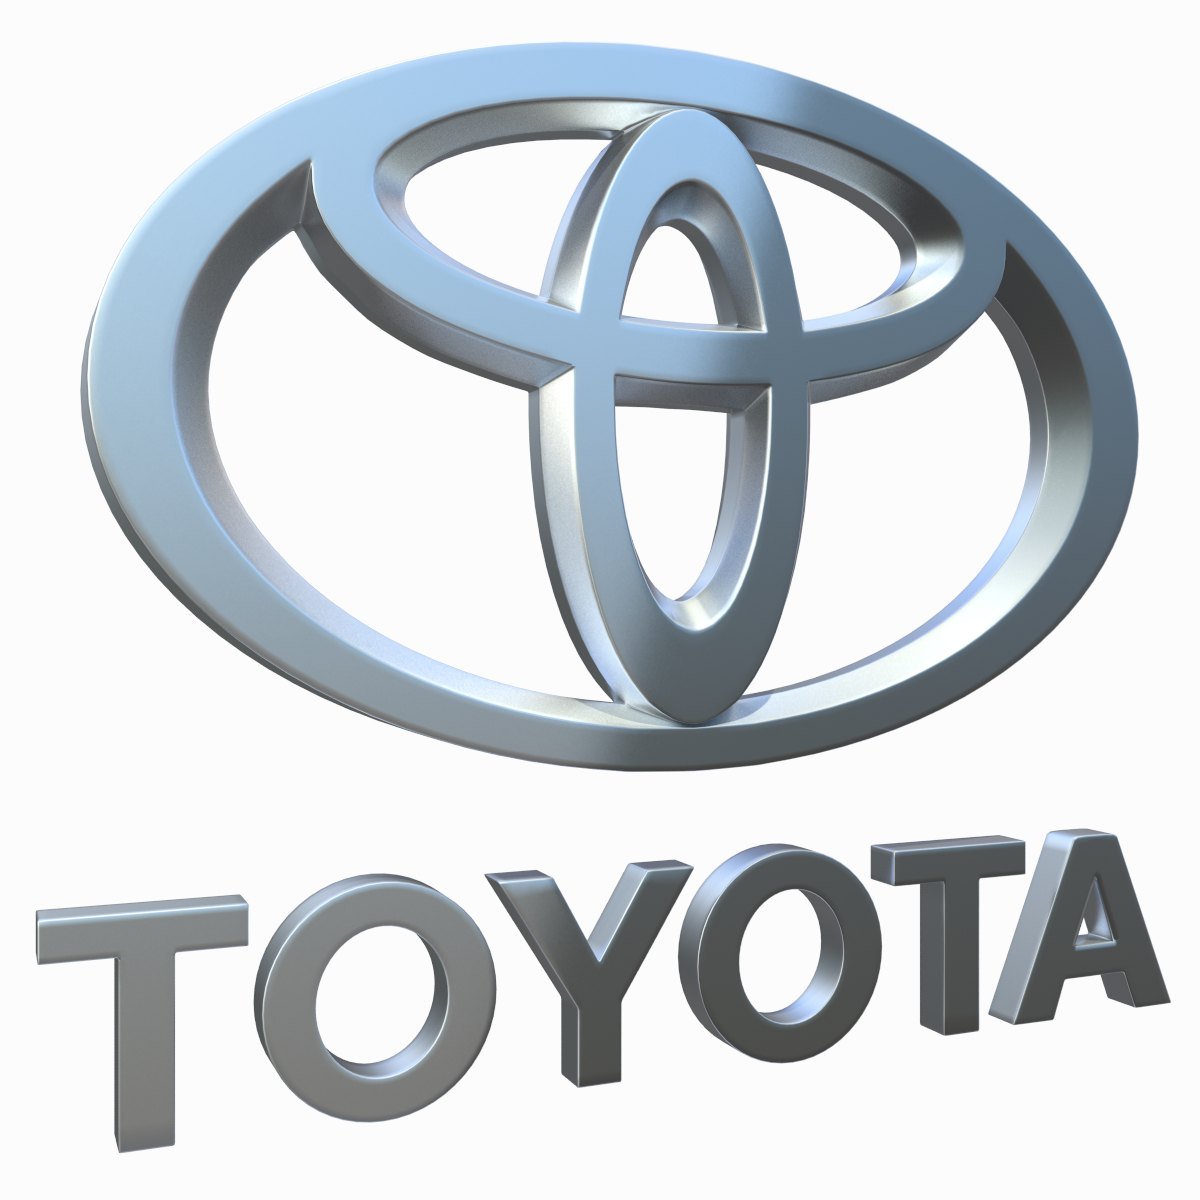 Тойота логотипы моделей